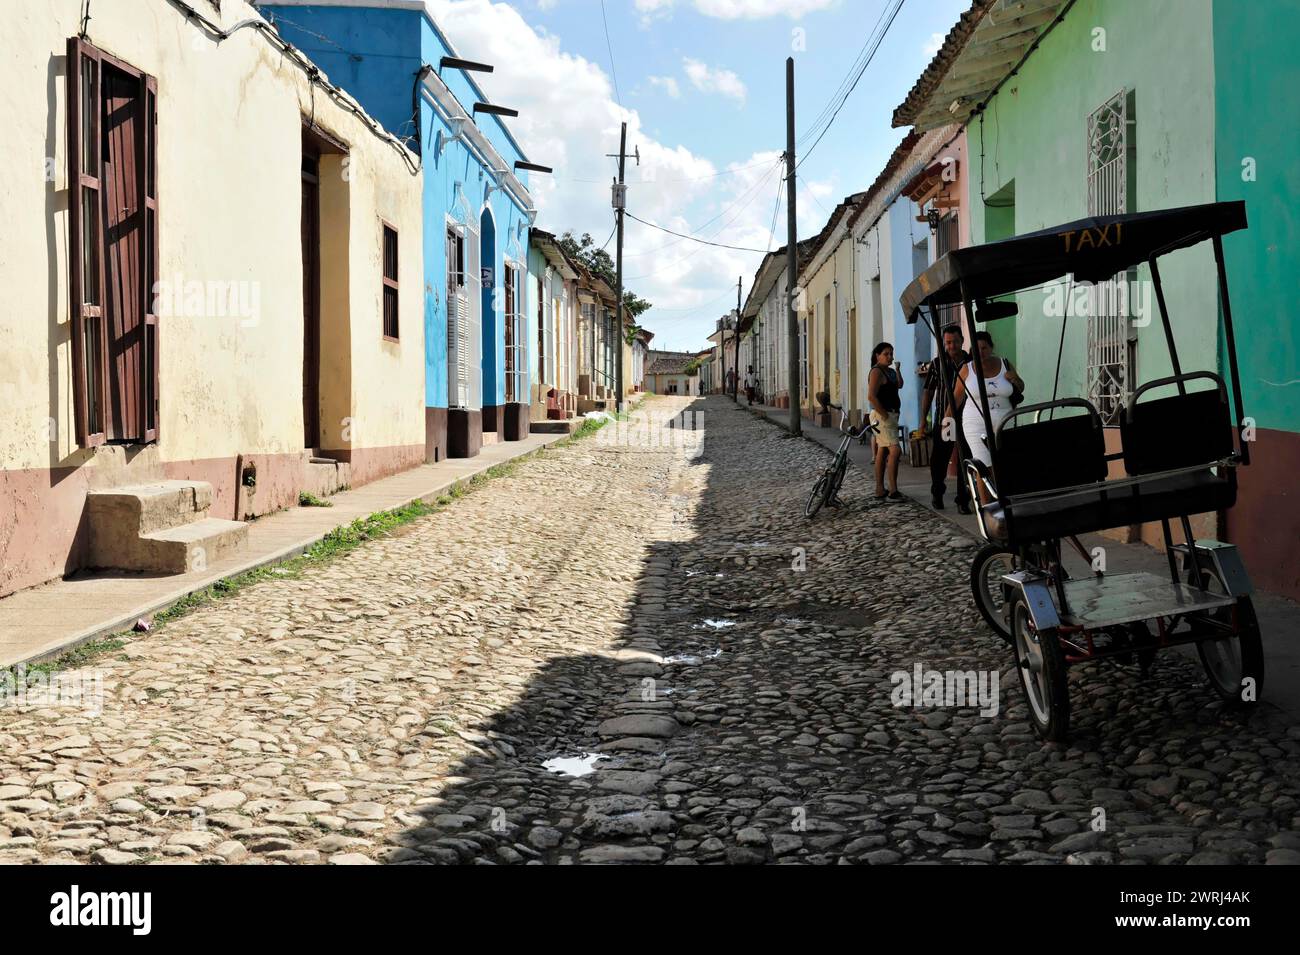 Vue sur une rue pavée avec l'architecture cubaine historique et un taxi, Trinidad, Cuba, Amérique centrale Banque D'Images